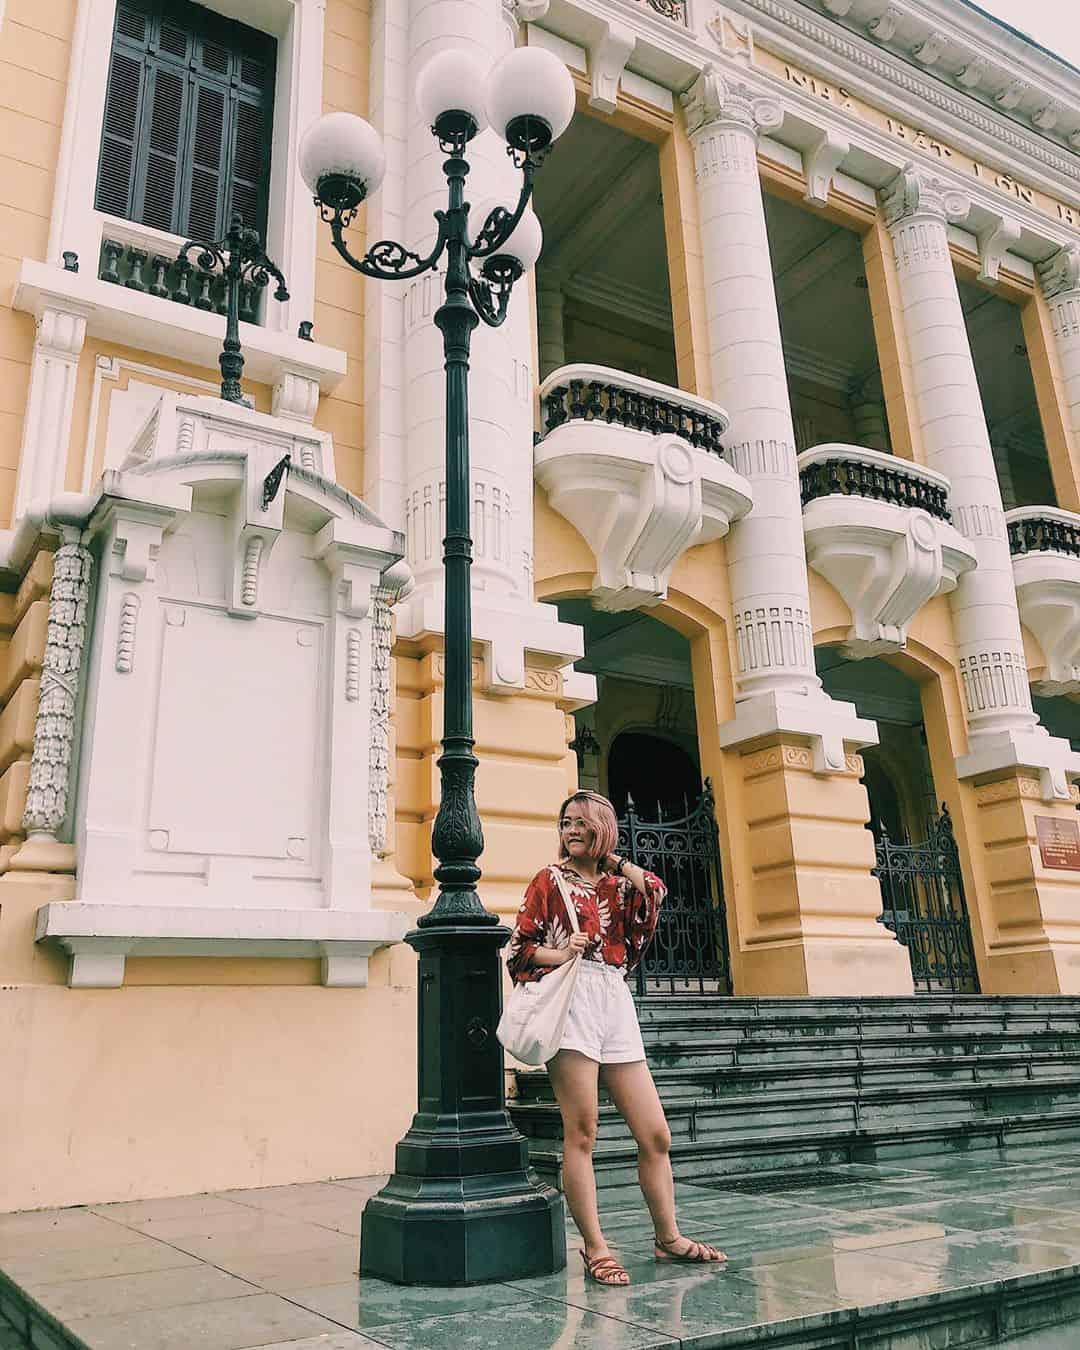 Nhà hát Hà Nội mang nét đẹp cổ kính nơi thủ đô. Ảnh: @___by__theheroine___